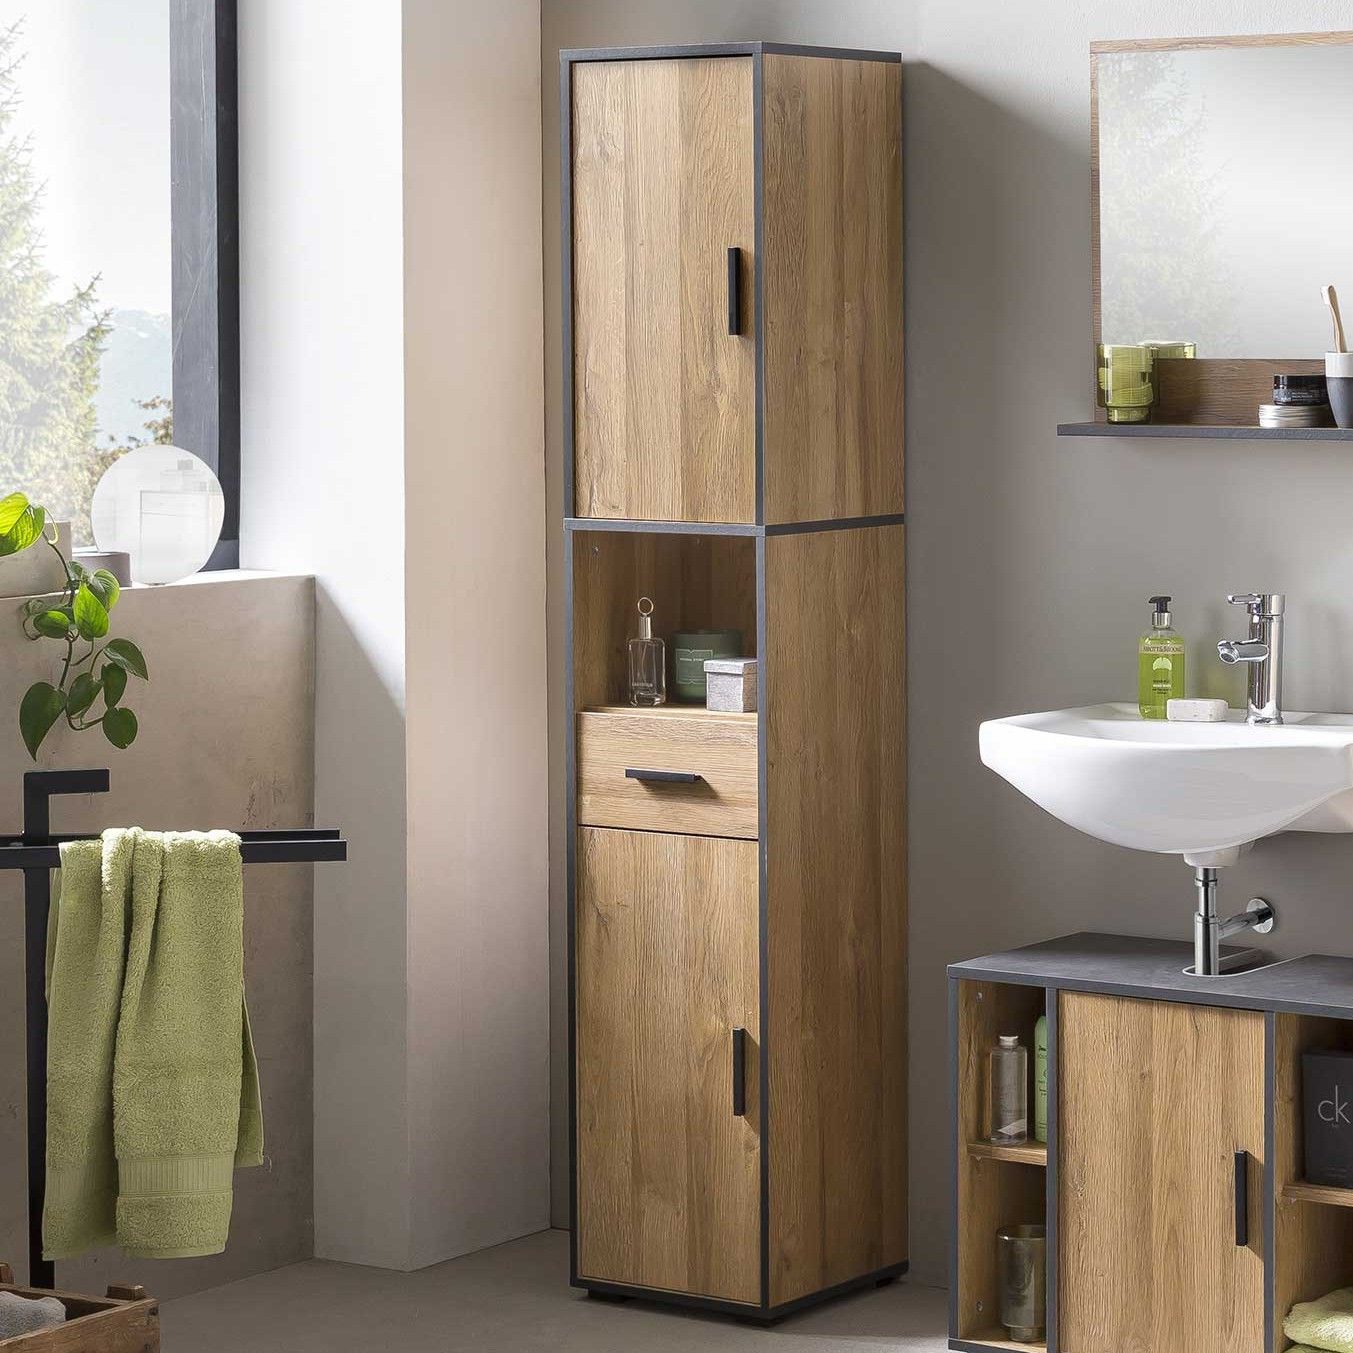 Relatief proza Gasvormig Welke materialen voor meubels kun je in de badkamer gebruiken? - Badkamer  Courant